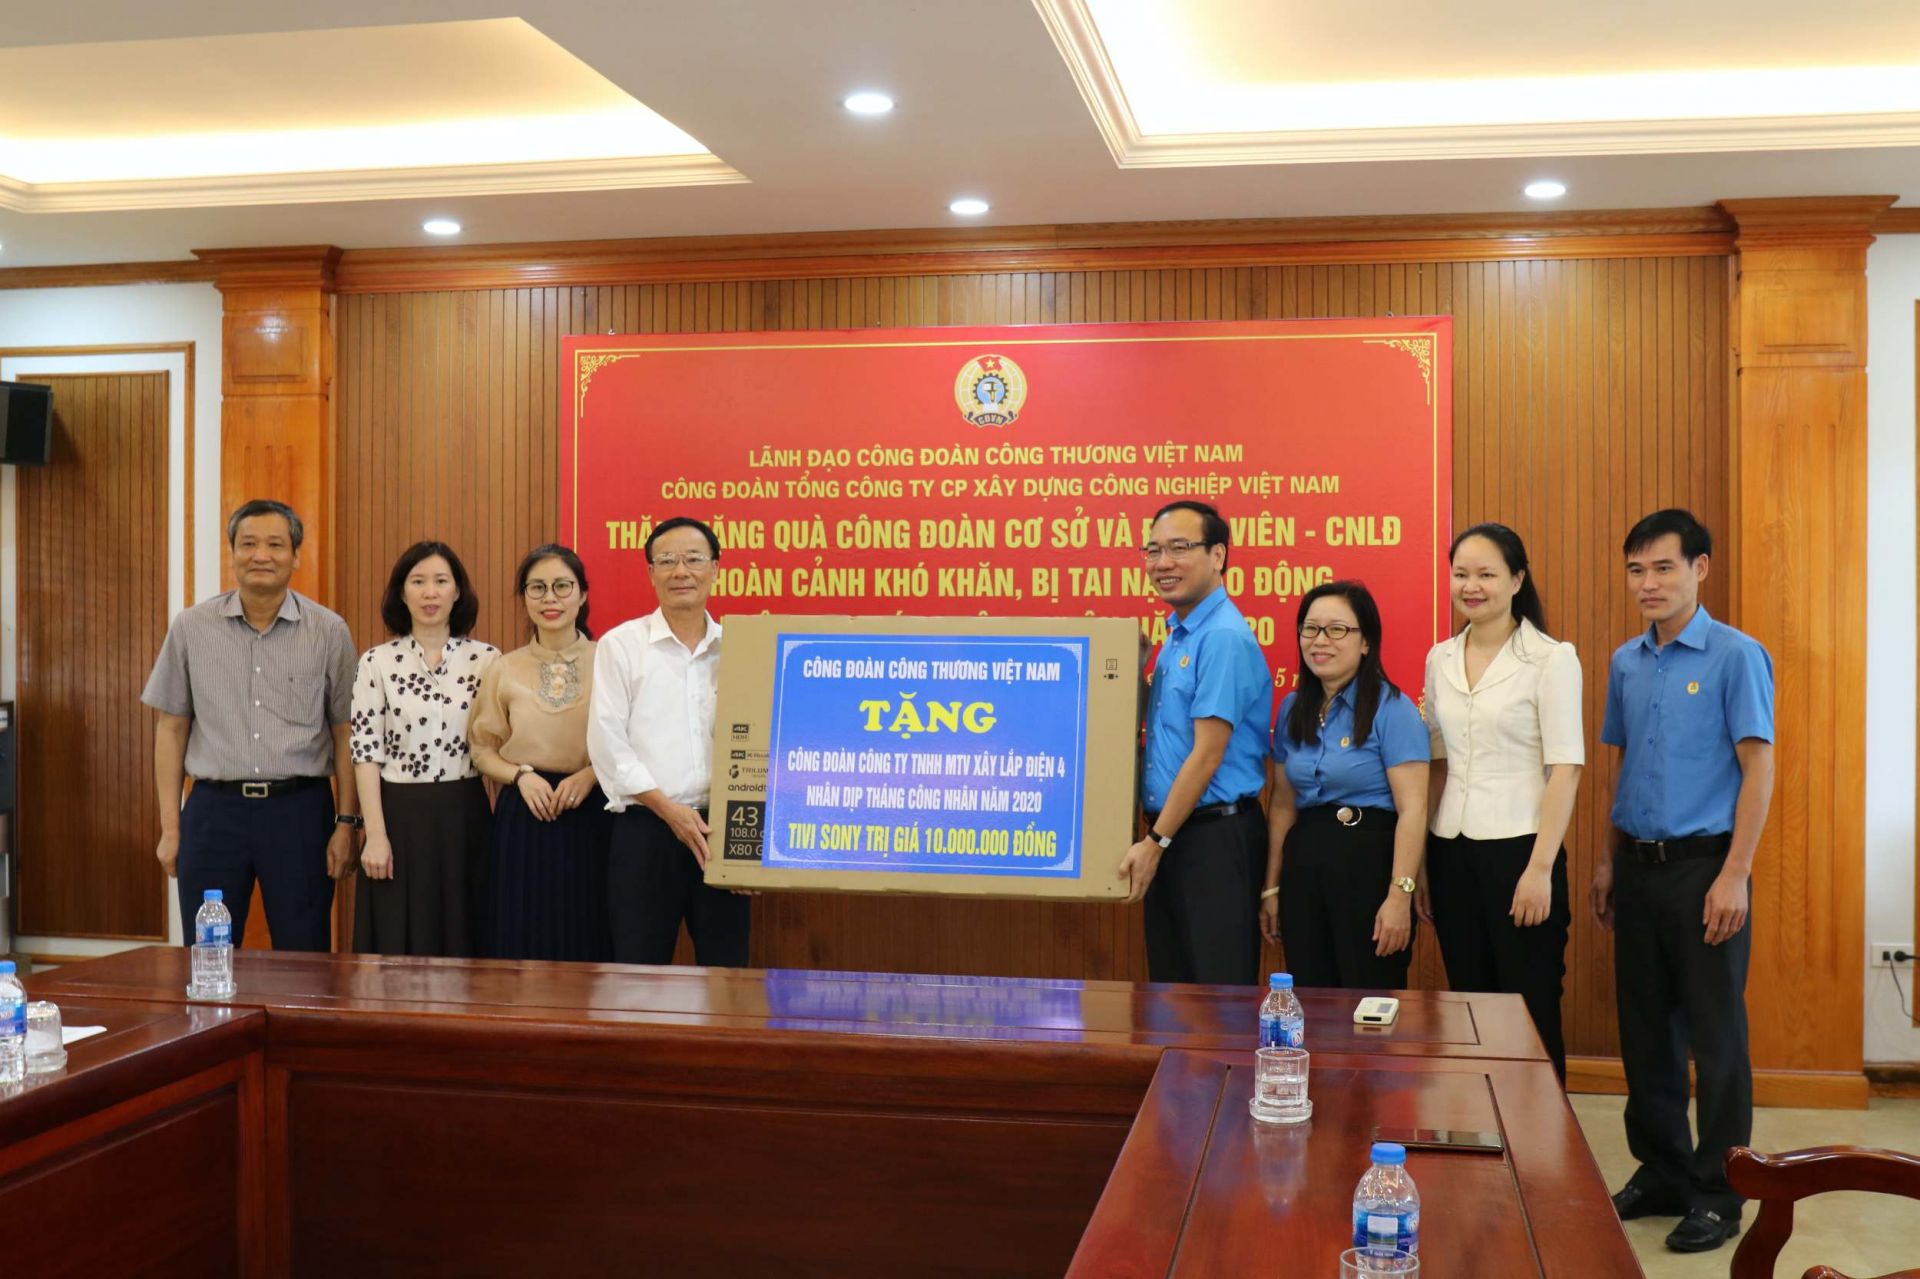 Chủ tịch CĐCTVN Trần Quang Huy tặng quà cho người lao động Xây lắp điện 4